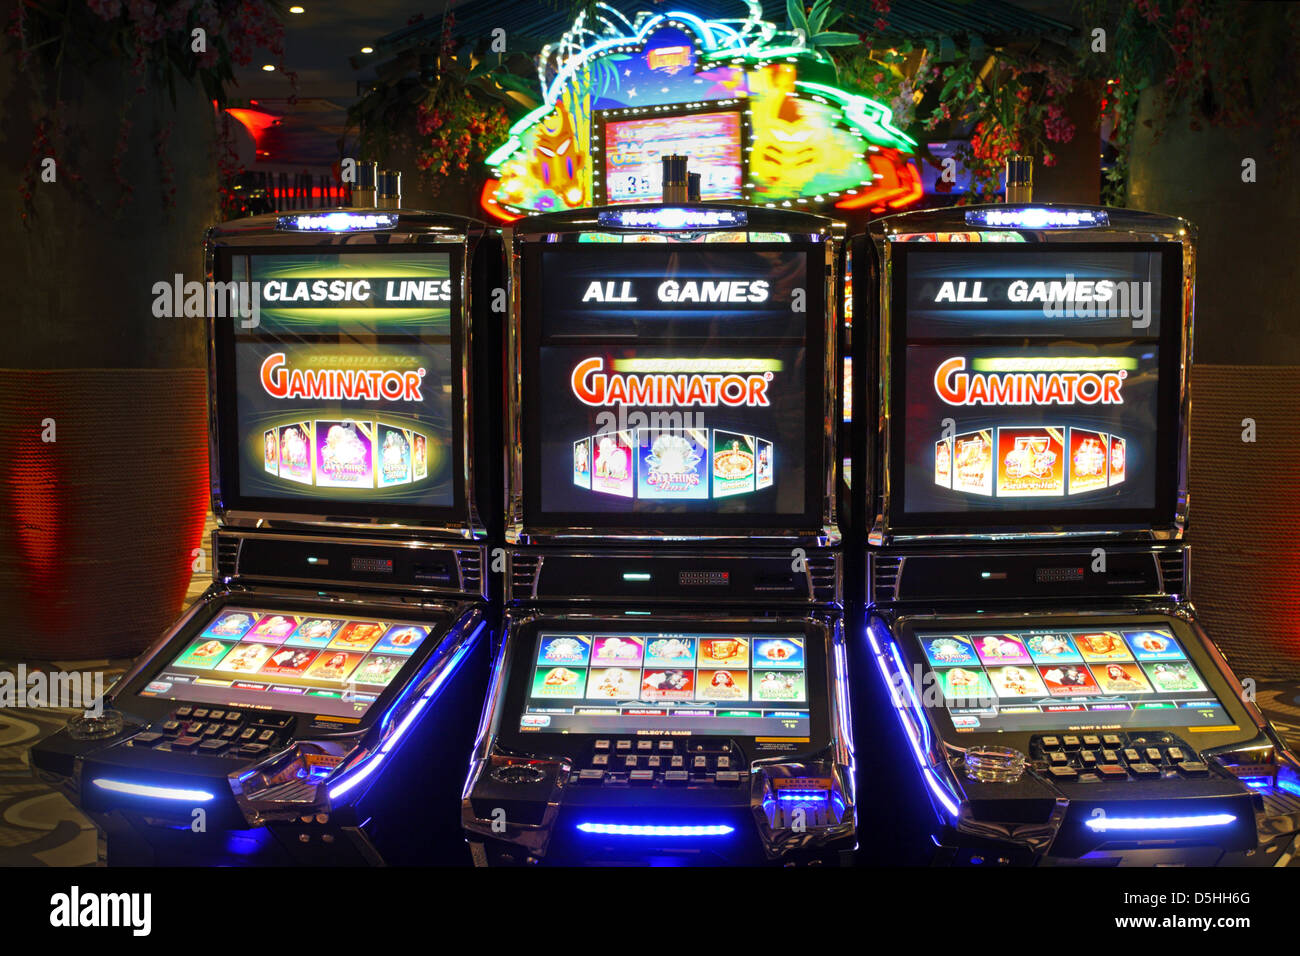 Olympic Casino, gambling machines in Riga, Latvia, Europe Stock Photo